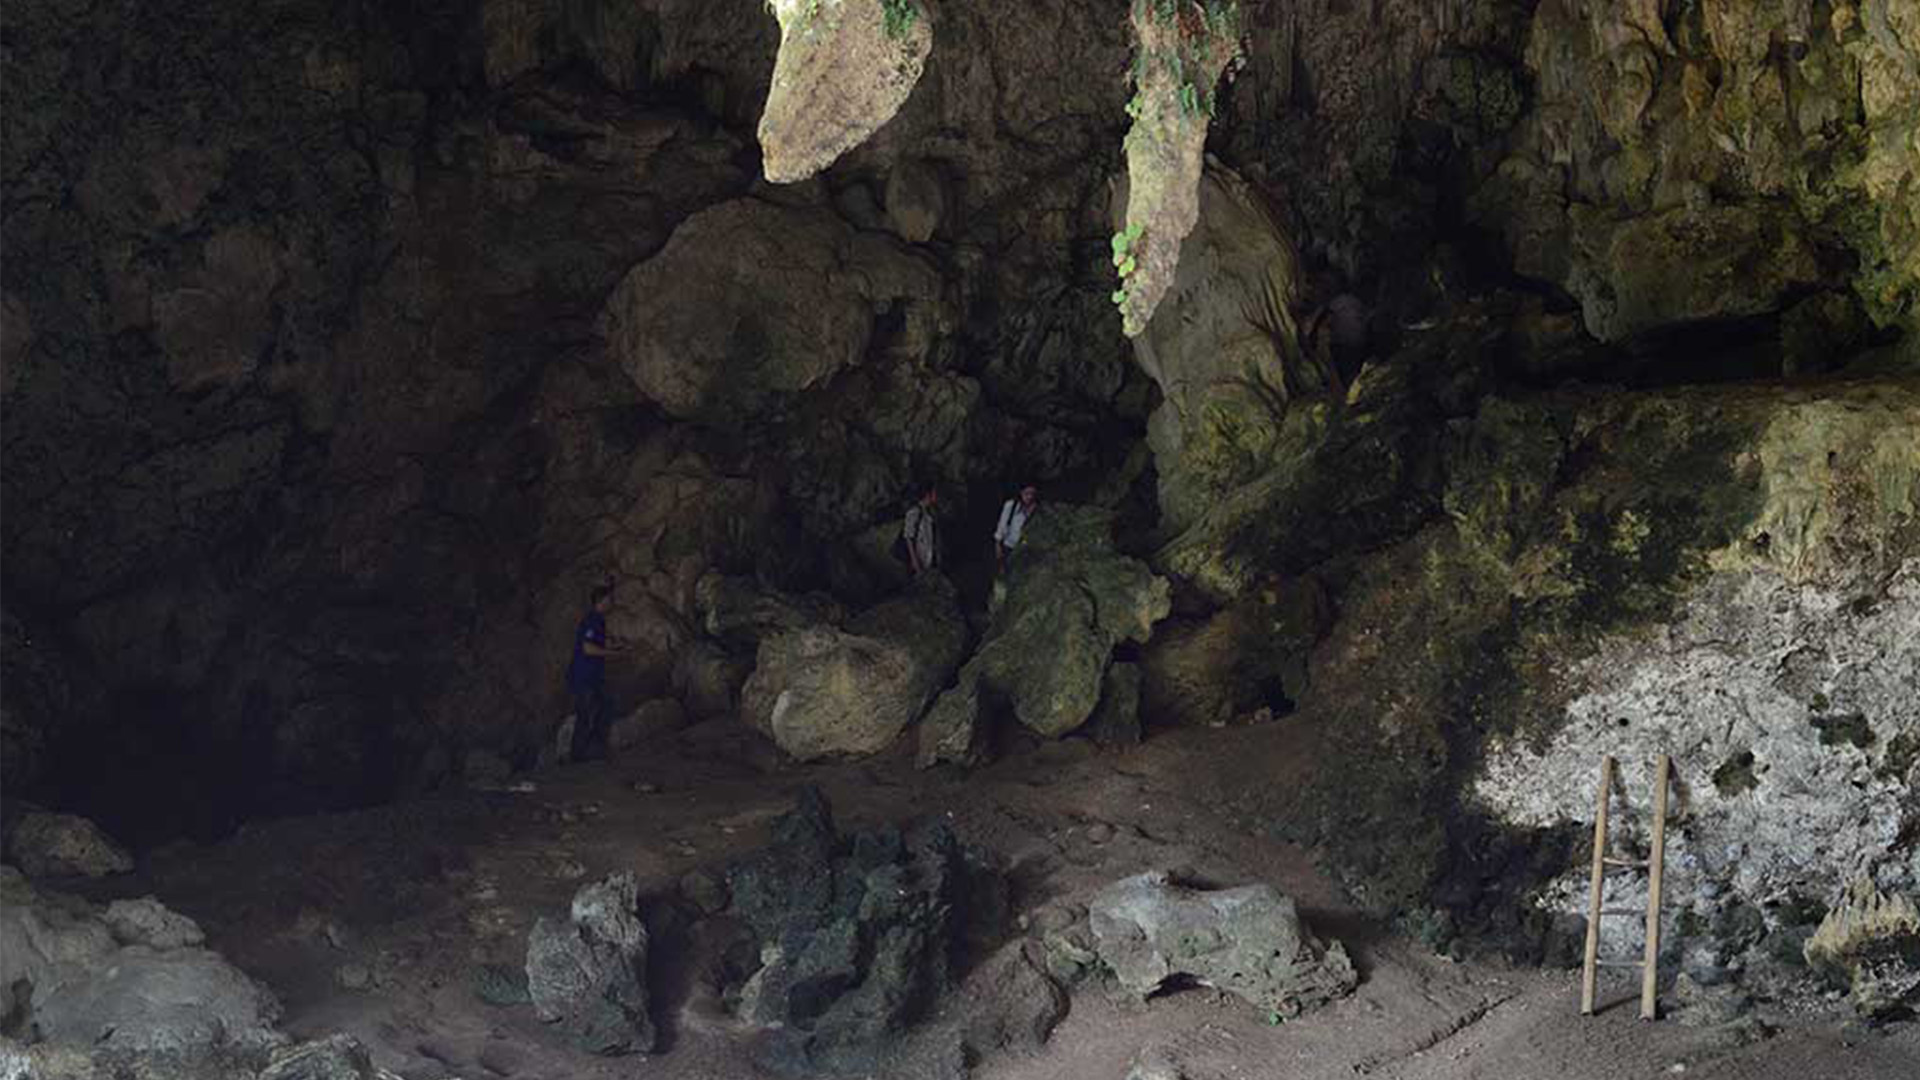 Beberapa pengunjung terlihat sedang menapaki gua Liang Bua. Dok. Pribadi.